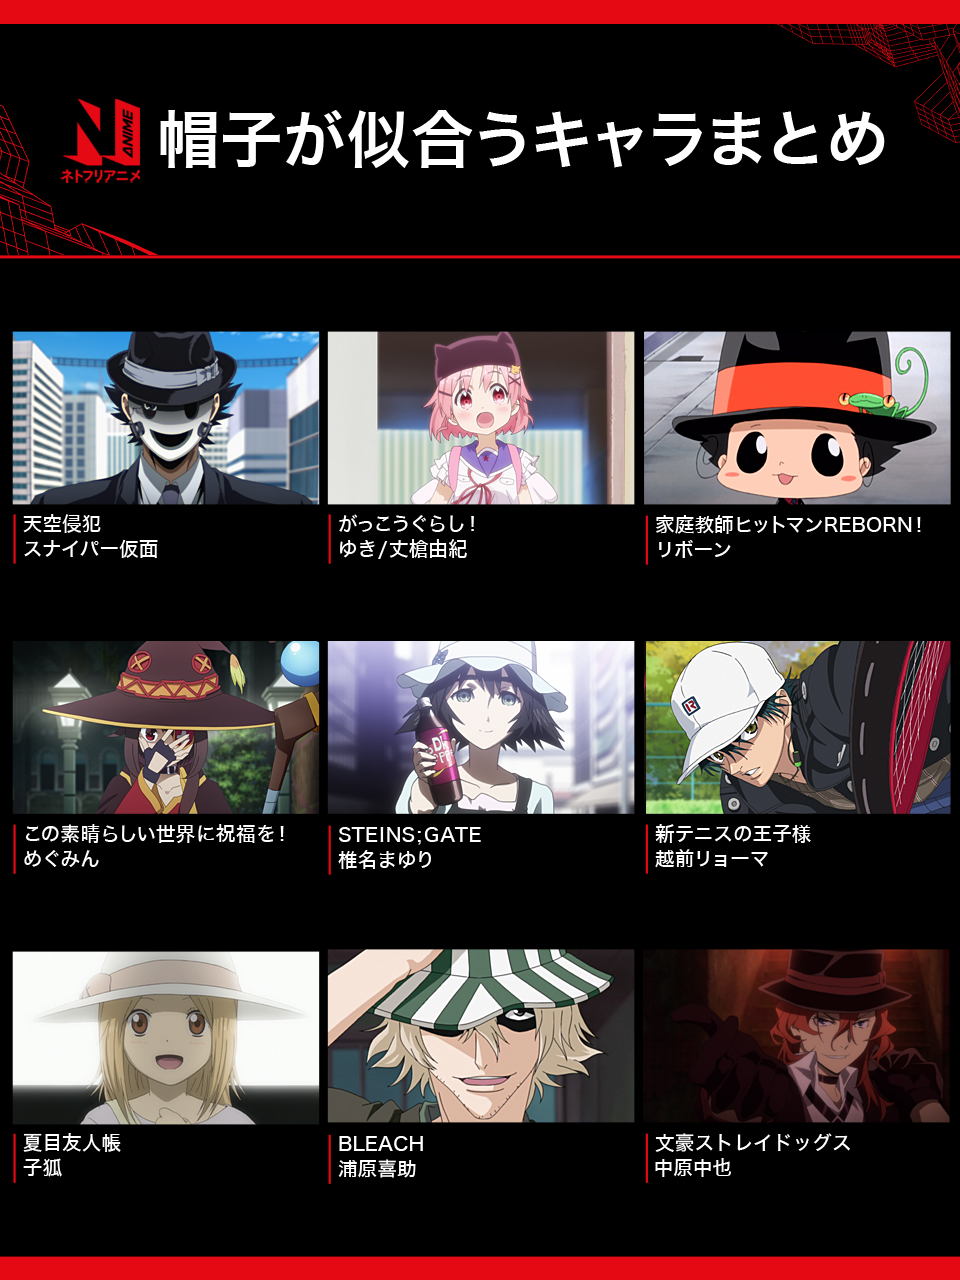 Netflix Japan Anime ネトフリ で配信中のアニメから 帽子が似合うキャラクターを一部集めてみました 他にも帽子の似合う個性的なアニメキャラはたくさんいますね 皆さんの好きな帽子キャラは ネトフリアニメ 帽子の日 T Co Eobnzfgvfy